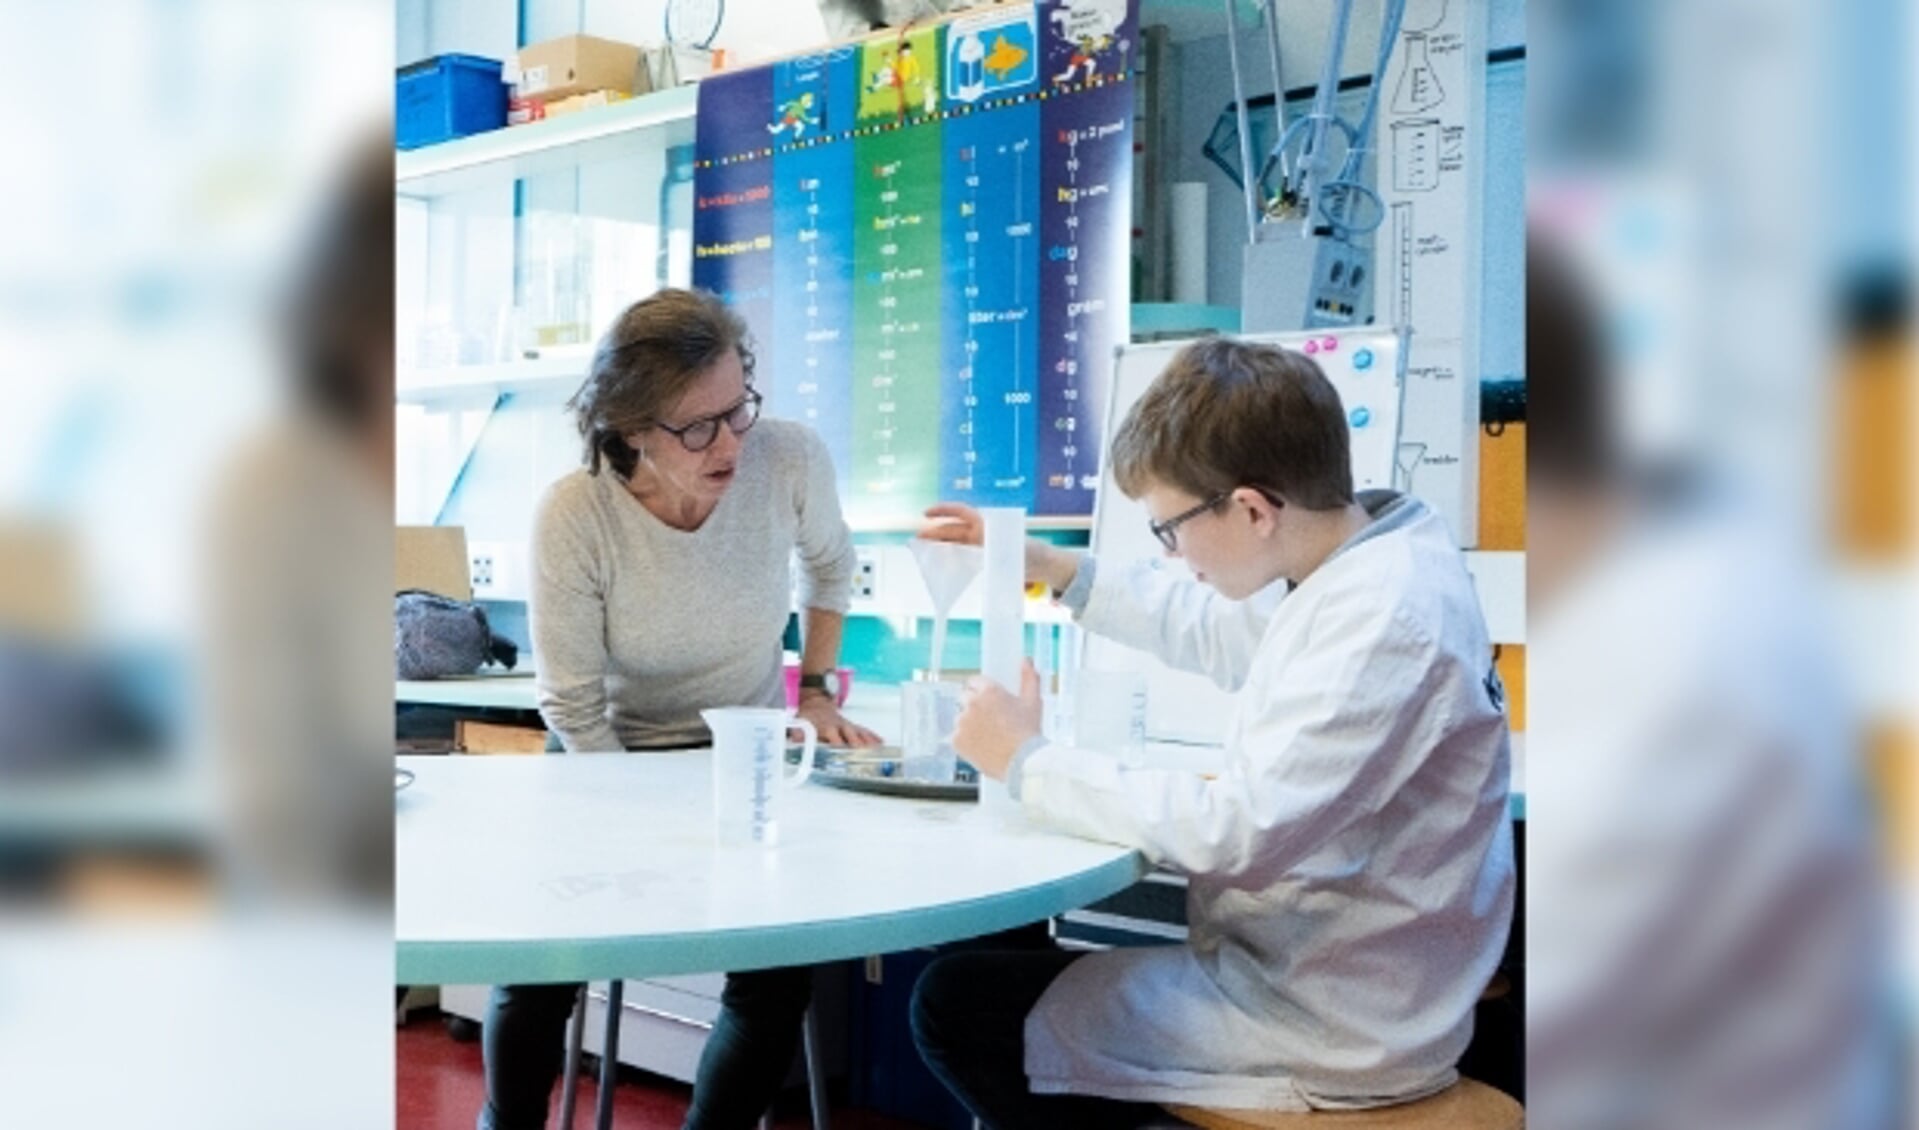 Scheikundeles in het laboratorium van basisschool De Klokbeker.